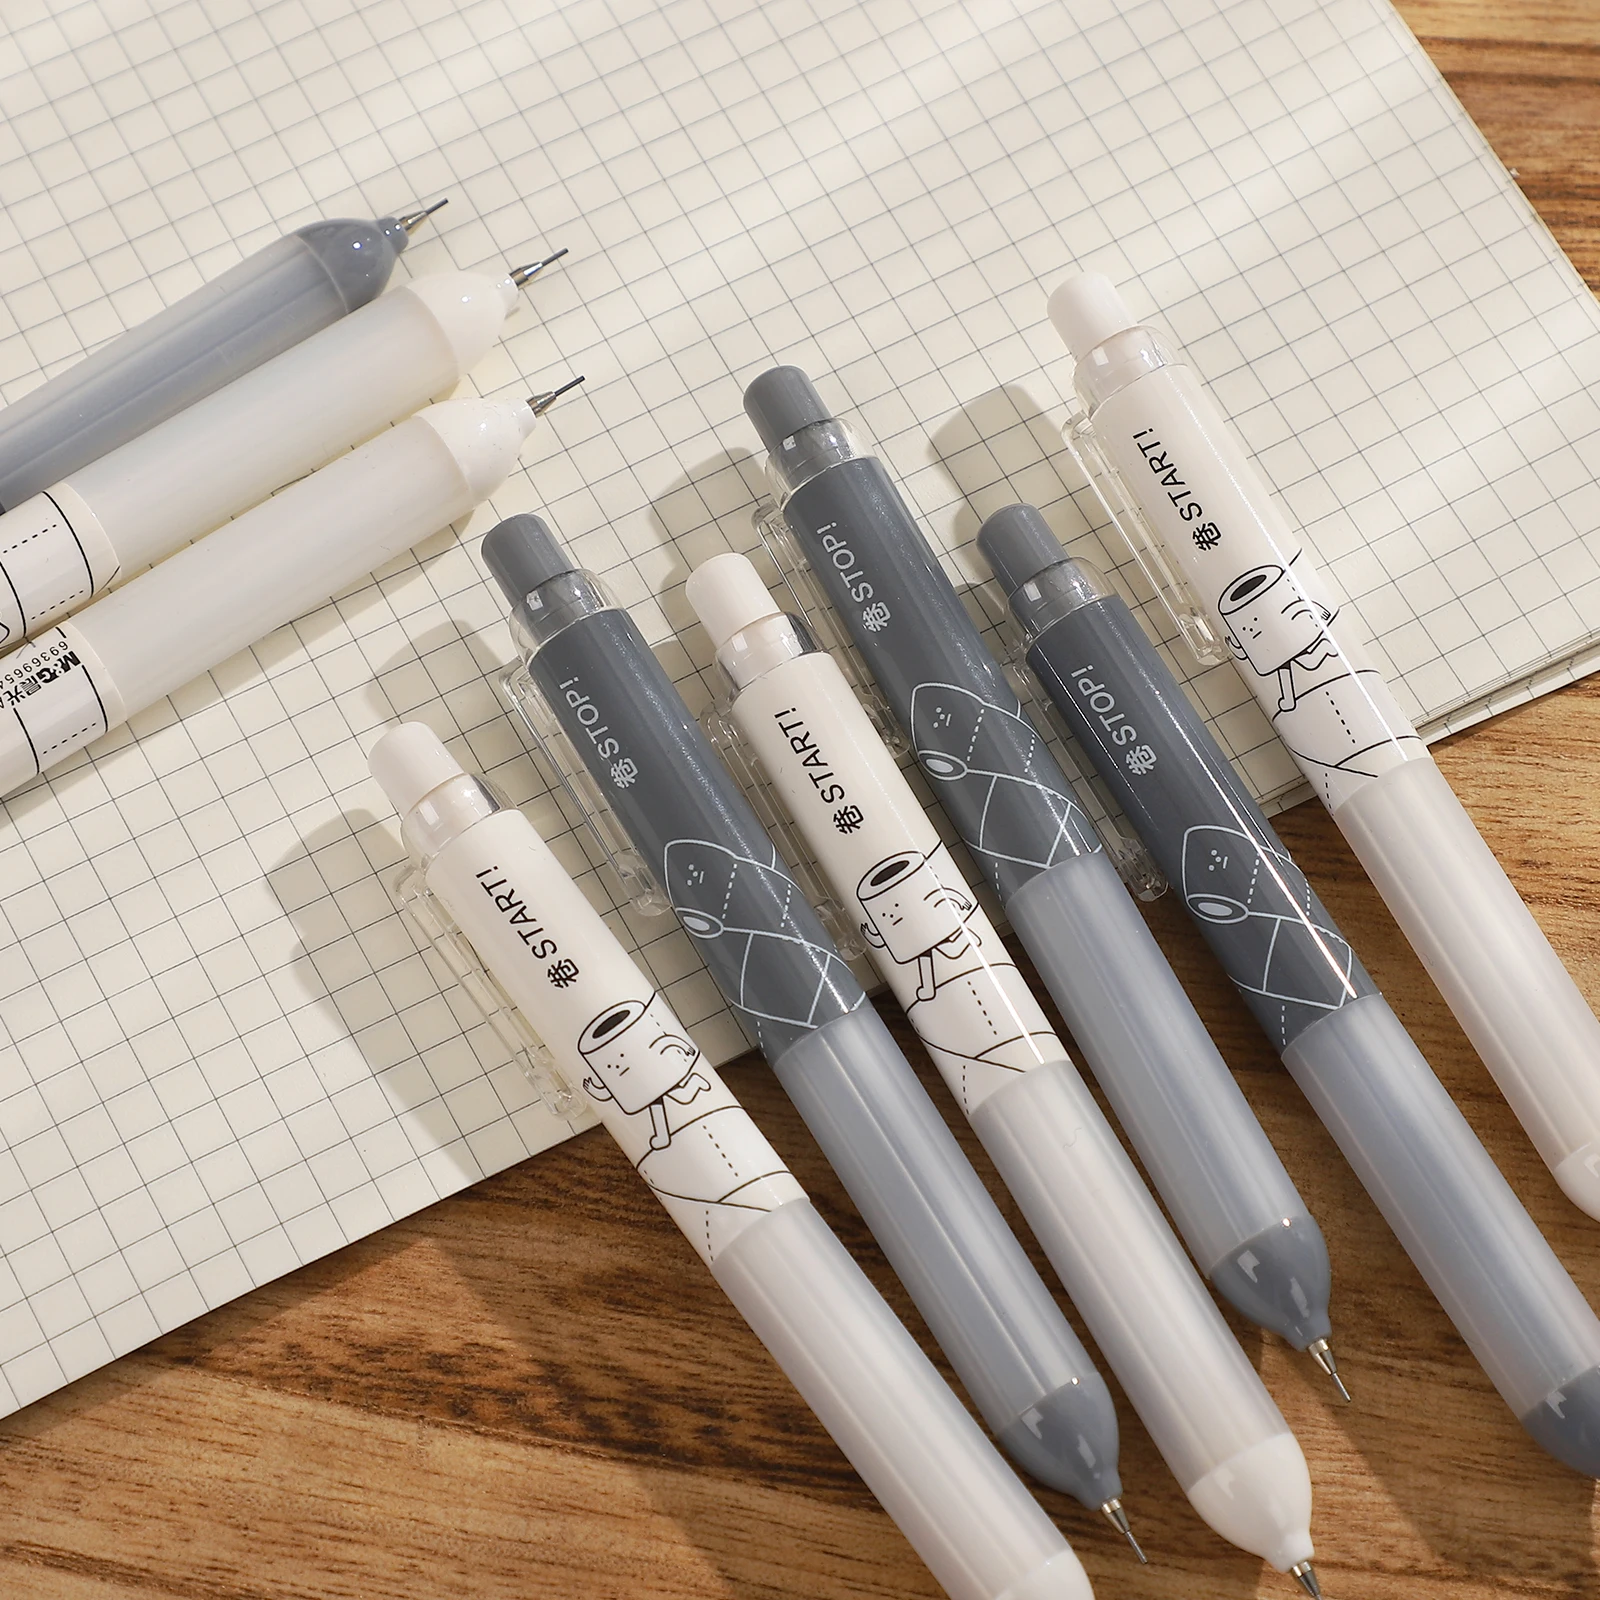 2 Ks/set Nízke ťažisko, Kawaii Mechanickej Ceruzky 0,5 mm Hladké Písanie Automatická Ceruzka Tvorivé Študentské kancelárske potreby Obrázok 1